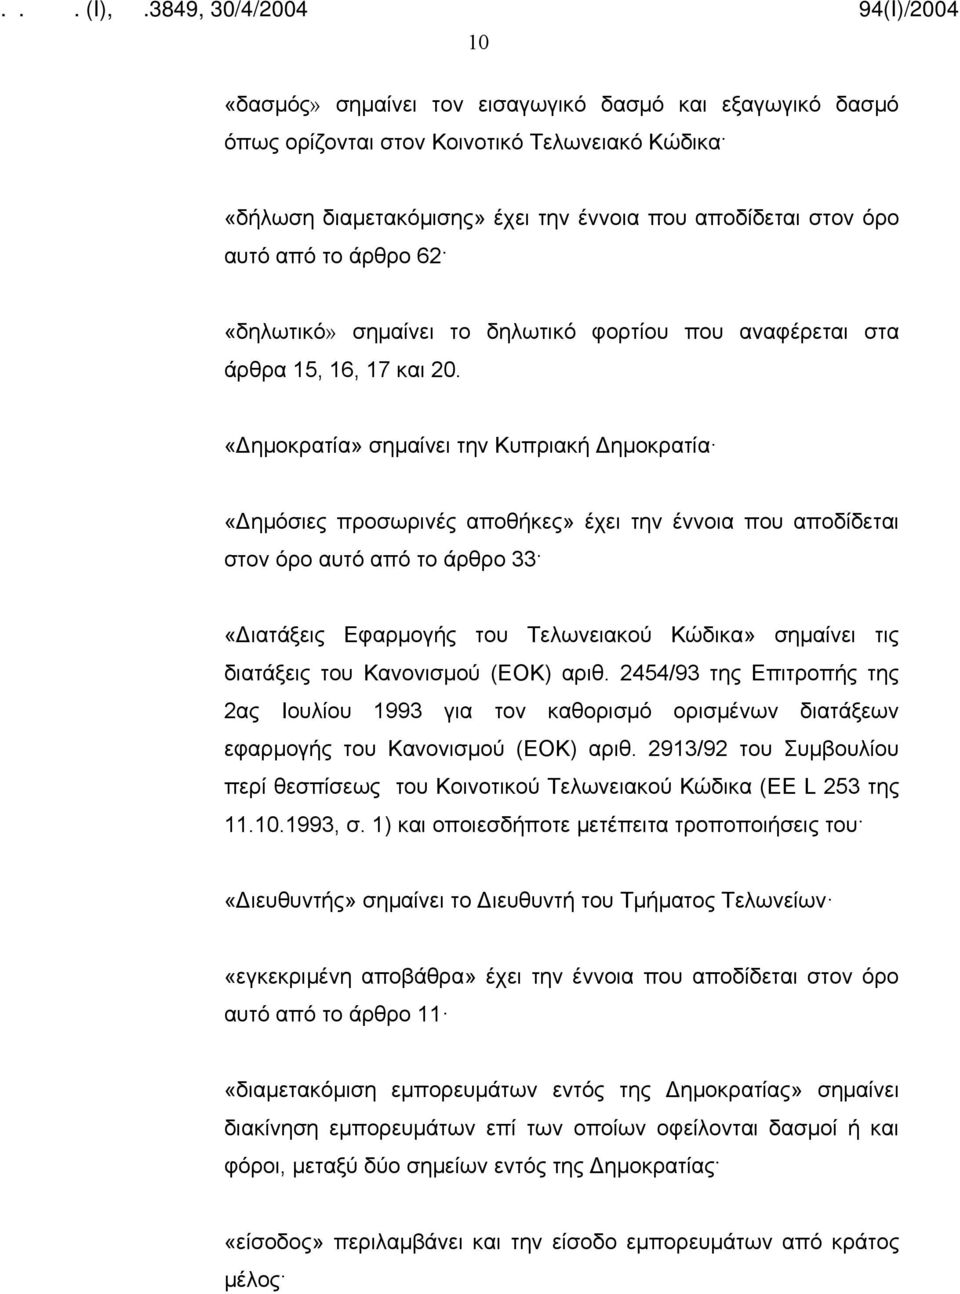 «Δημοκρατία» σημαίνει την Κυπριακή Δημοκρατία «Δημόσιες προσωρινές αποθήκες» έχει την έννοια που αποδίδεται στον όρο αυτό από το άρθρο 33 «Διατάξεις Εφαρμογής του Τελωνειακού Κώδικα» σημαίνει τις